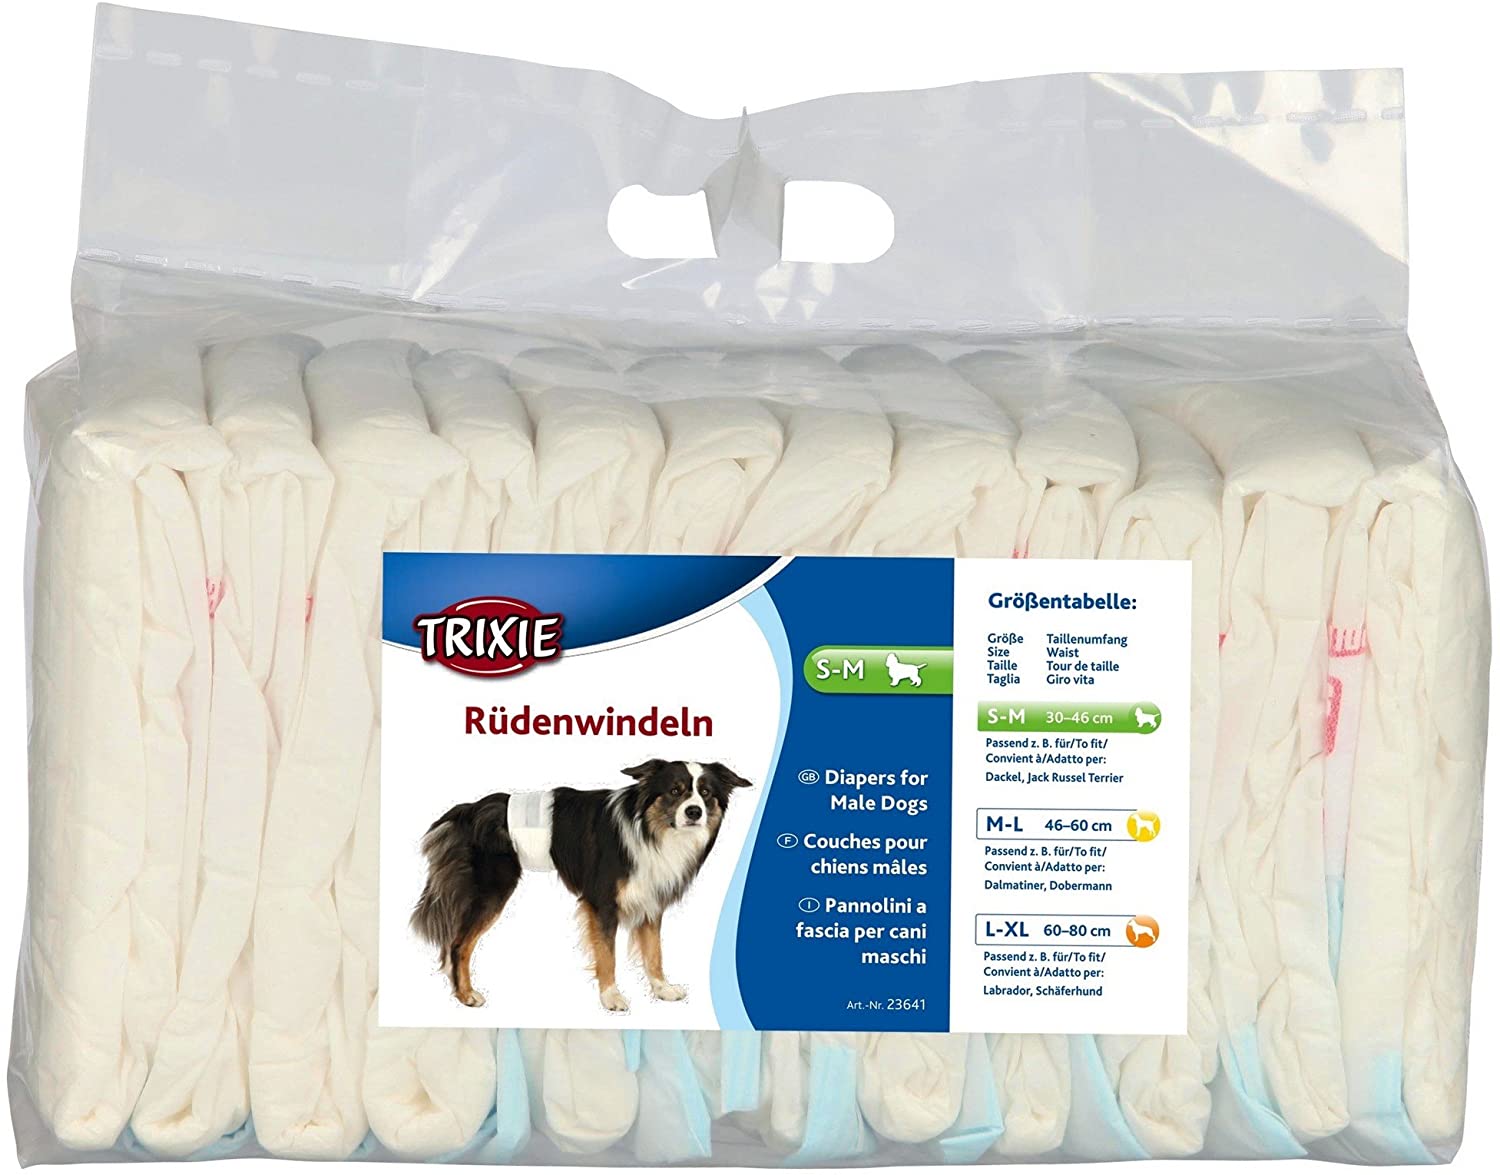  Trixie Pañales para Perros Absorbentes - Empapadores Perros Desechables para Incontinencias Cómodos 12 Unidades Talla S-M, 30-46 cm 